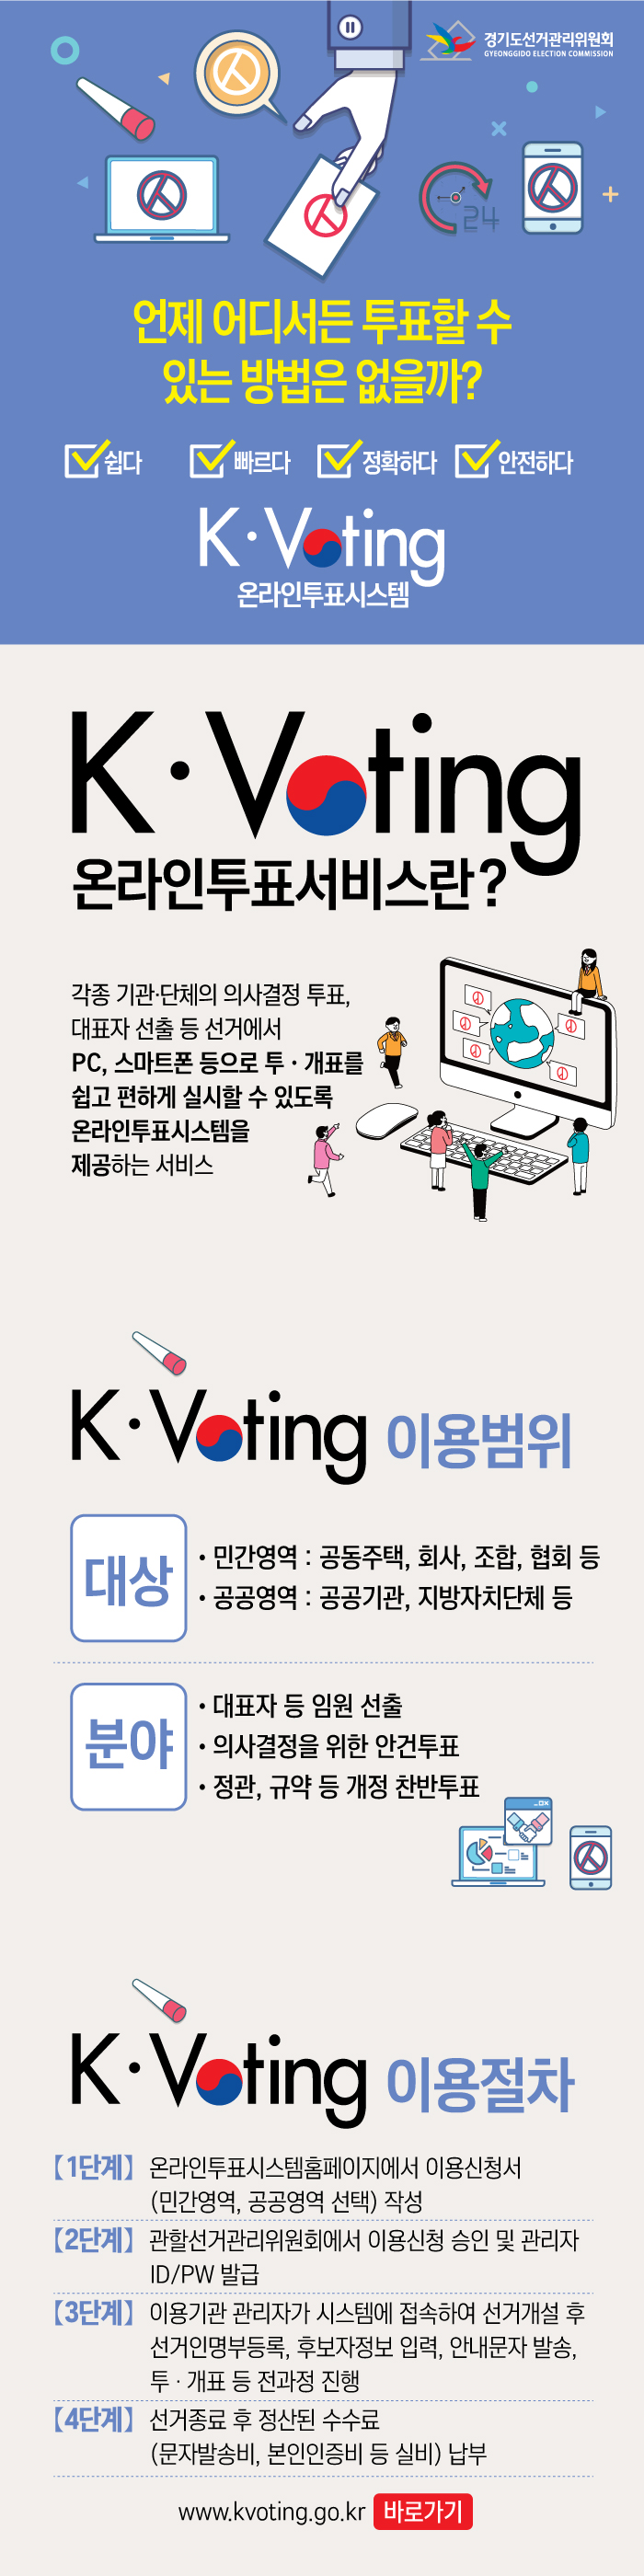 K·Voting 온라인투표 시스템